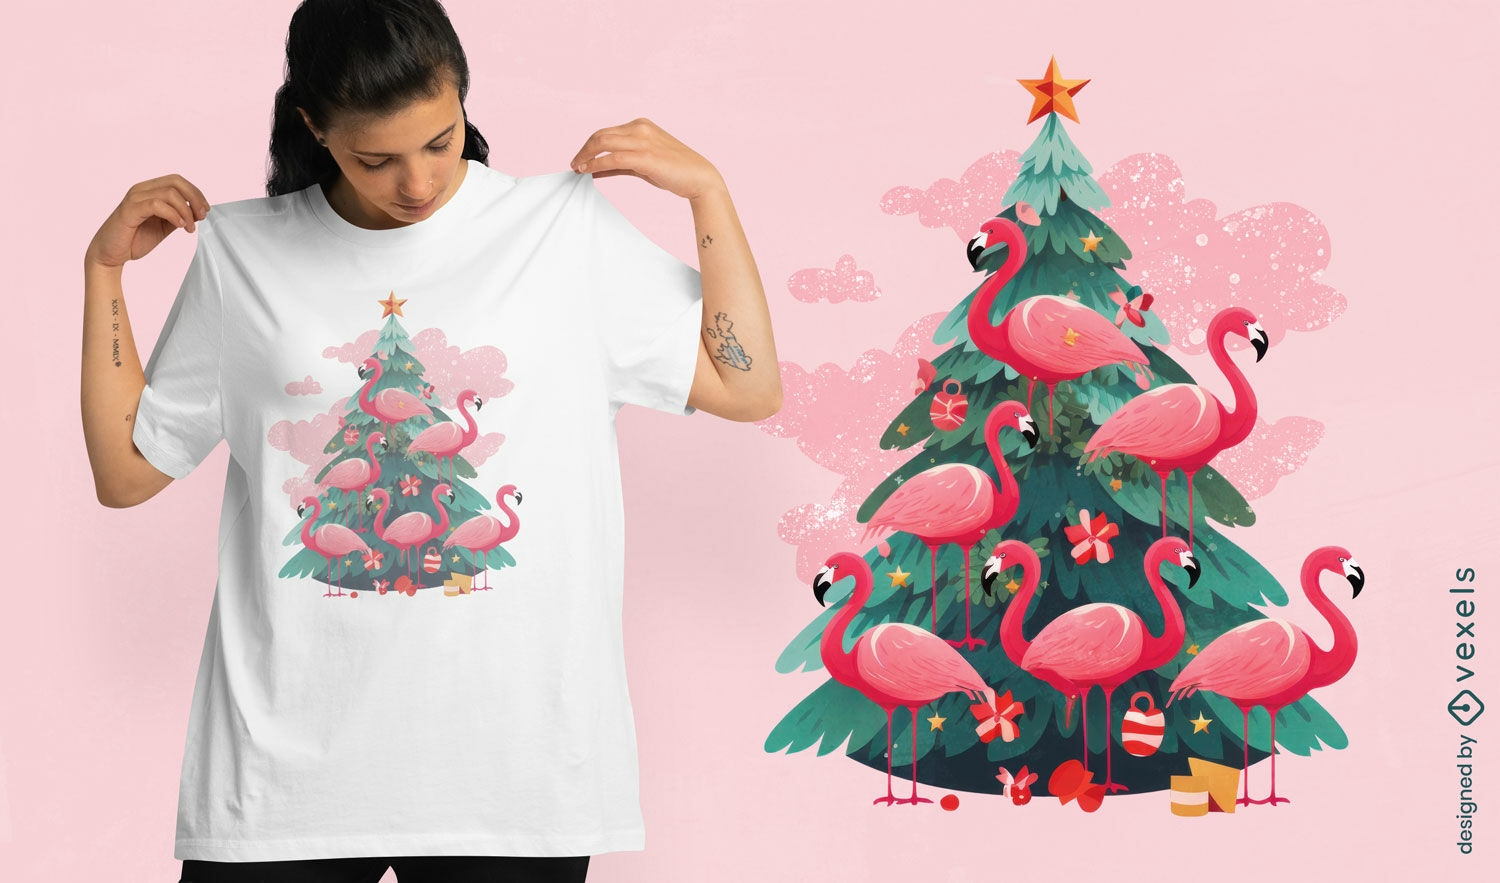 Dise?o de camiseta de ?rbol de navidad de flamencos rosados